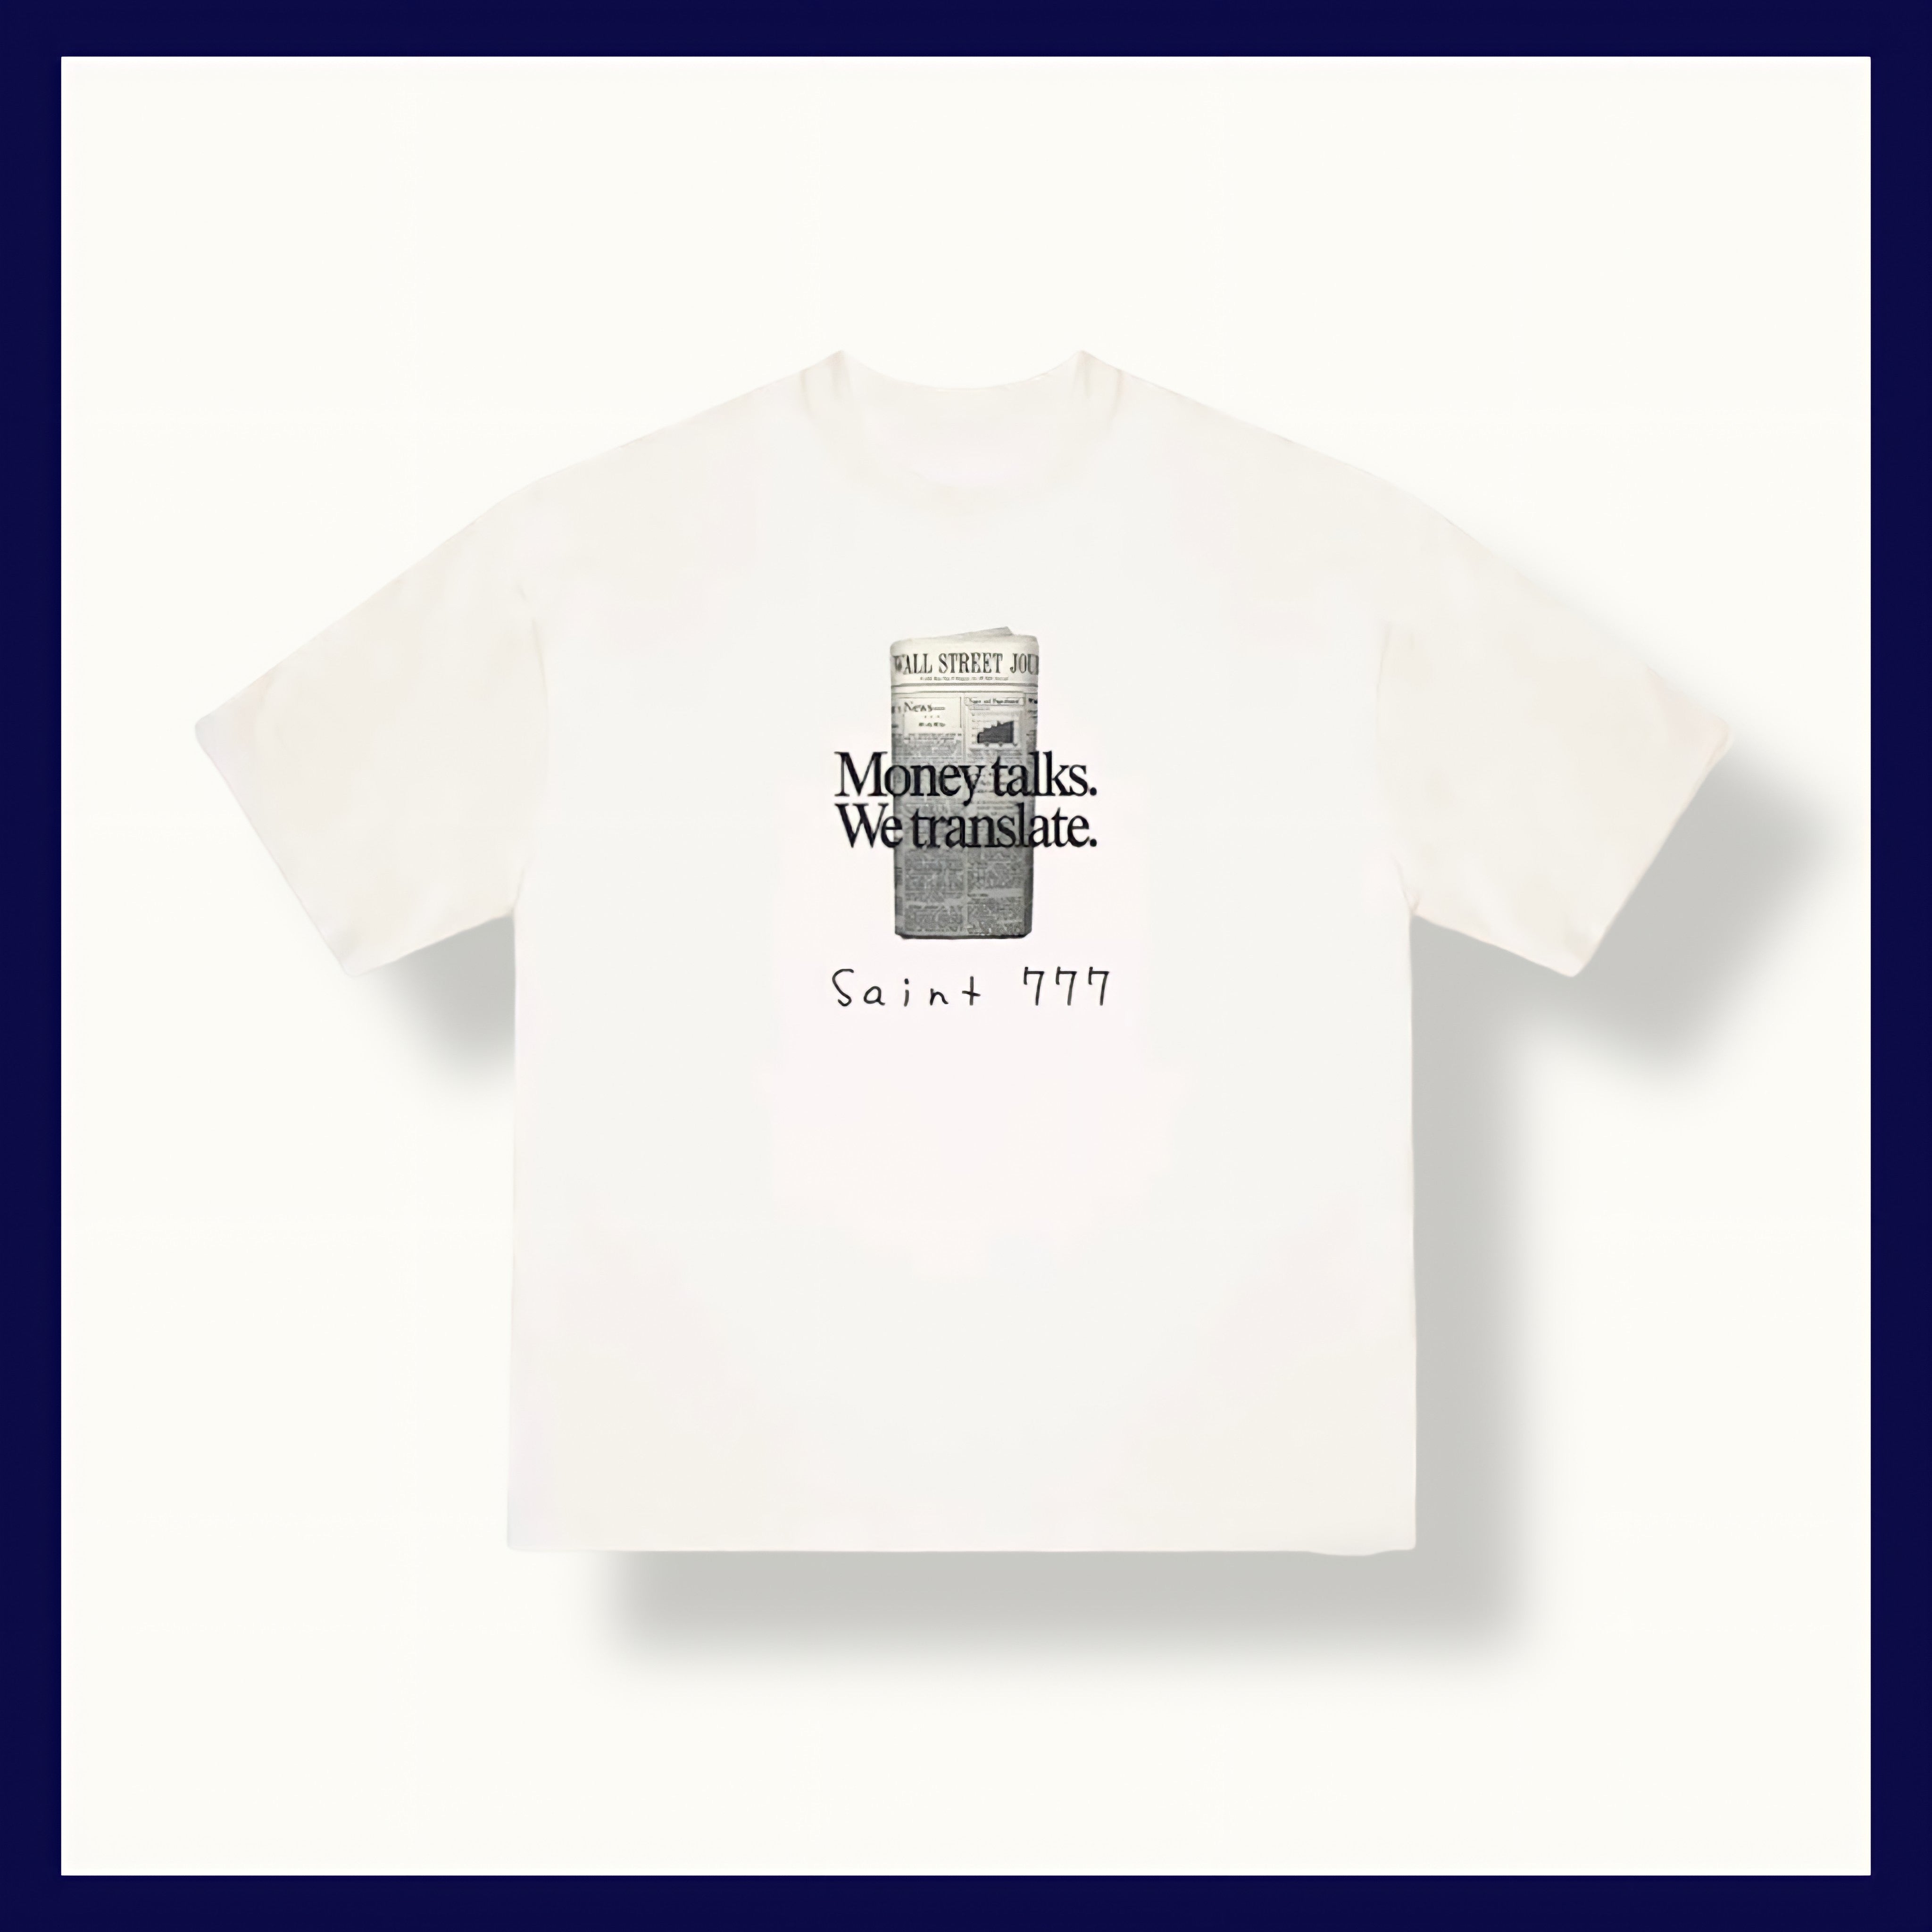 Wall st. Journal t-shirt – Saint 777